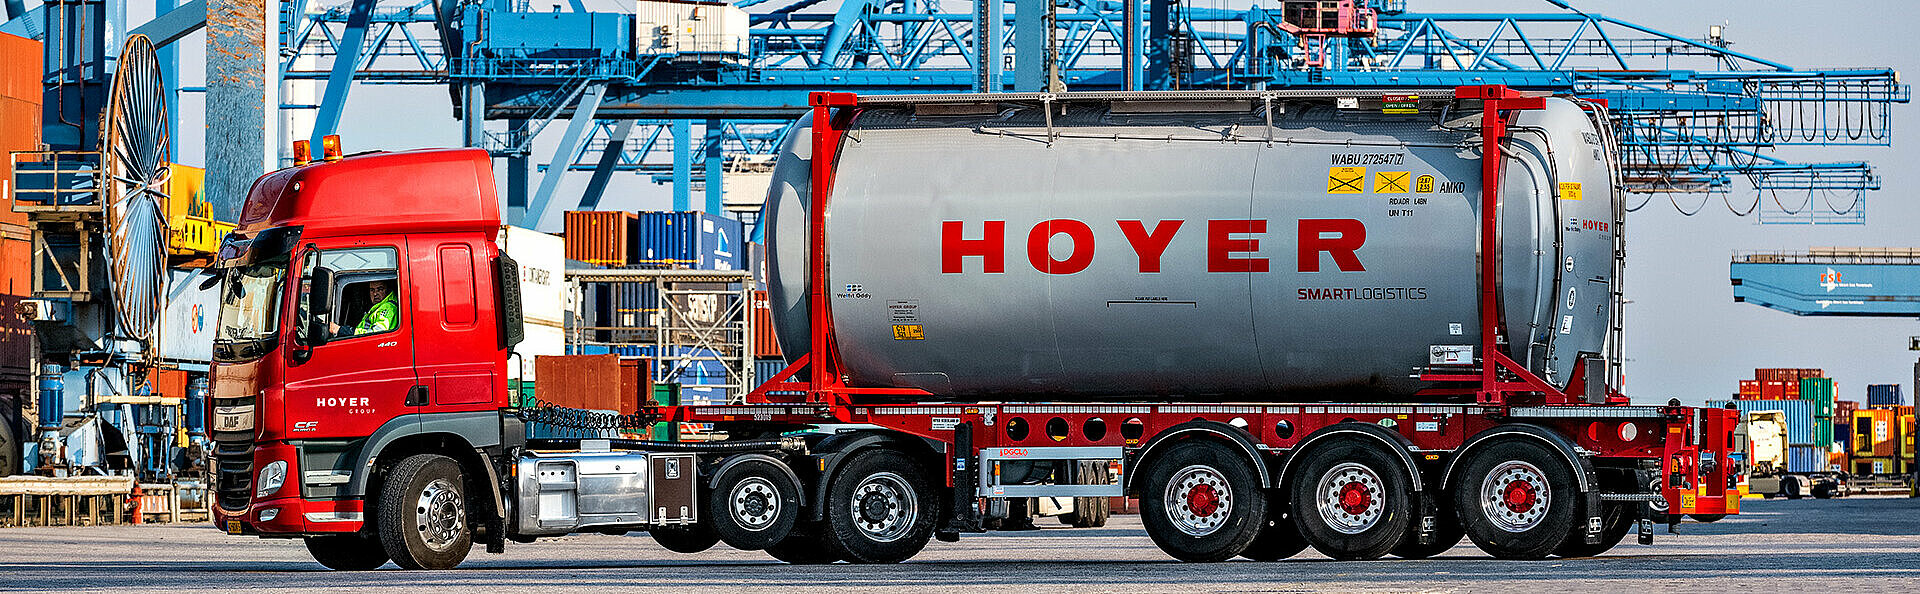 HOYER Lkw mit Chemie-Tankcontainer smart logistics in Rotterdam